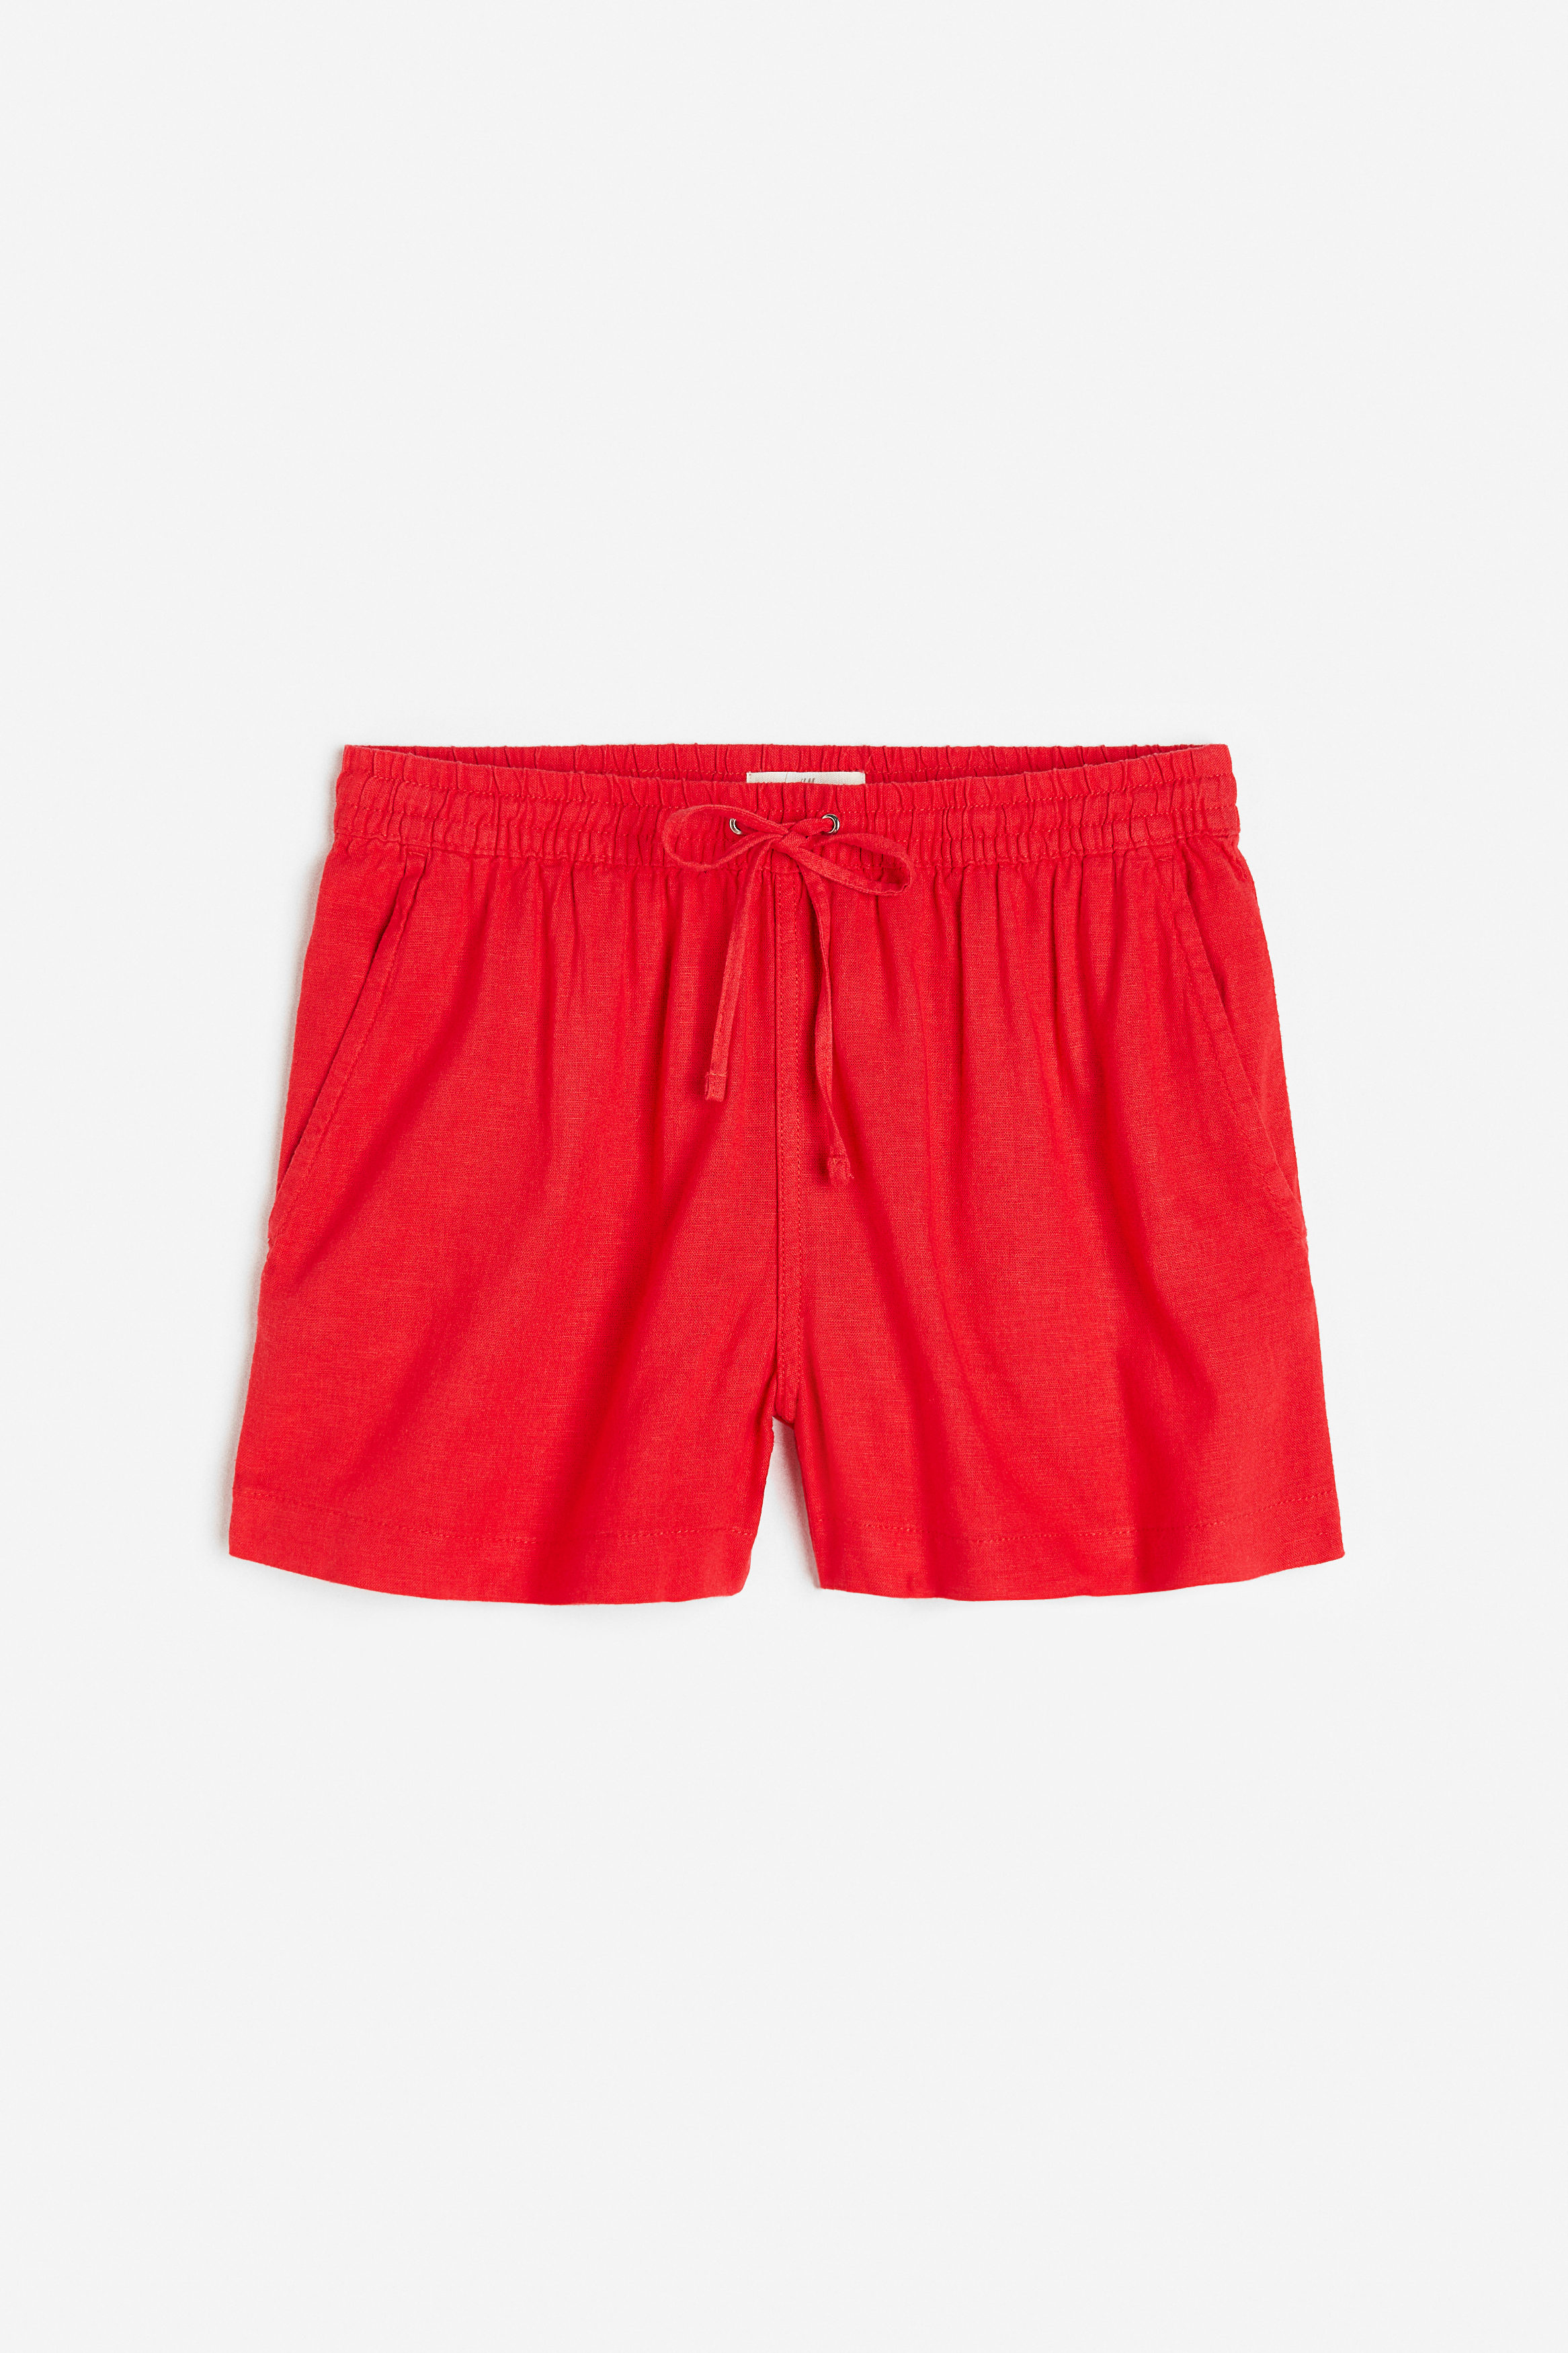 Billede af H&M Shorts I Hørblanding Rød. Farve: Red størrelse XS